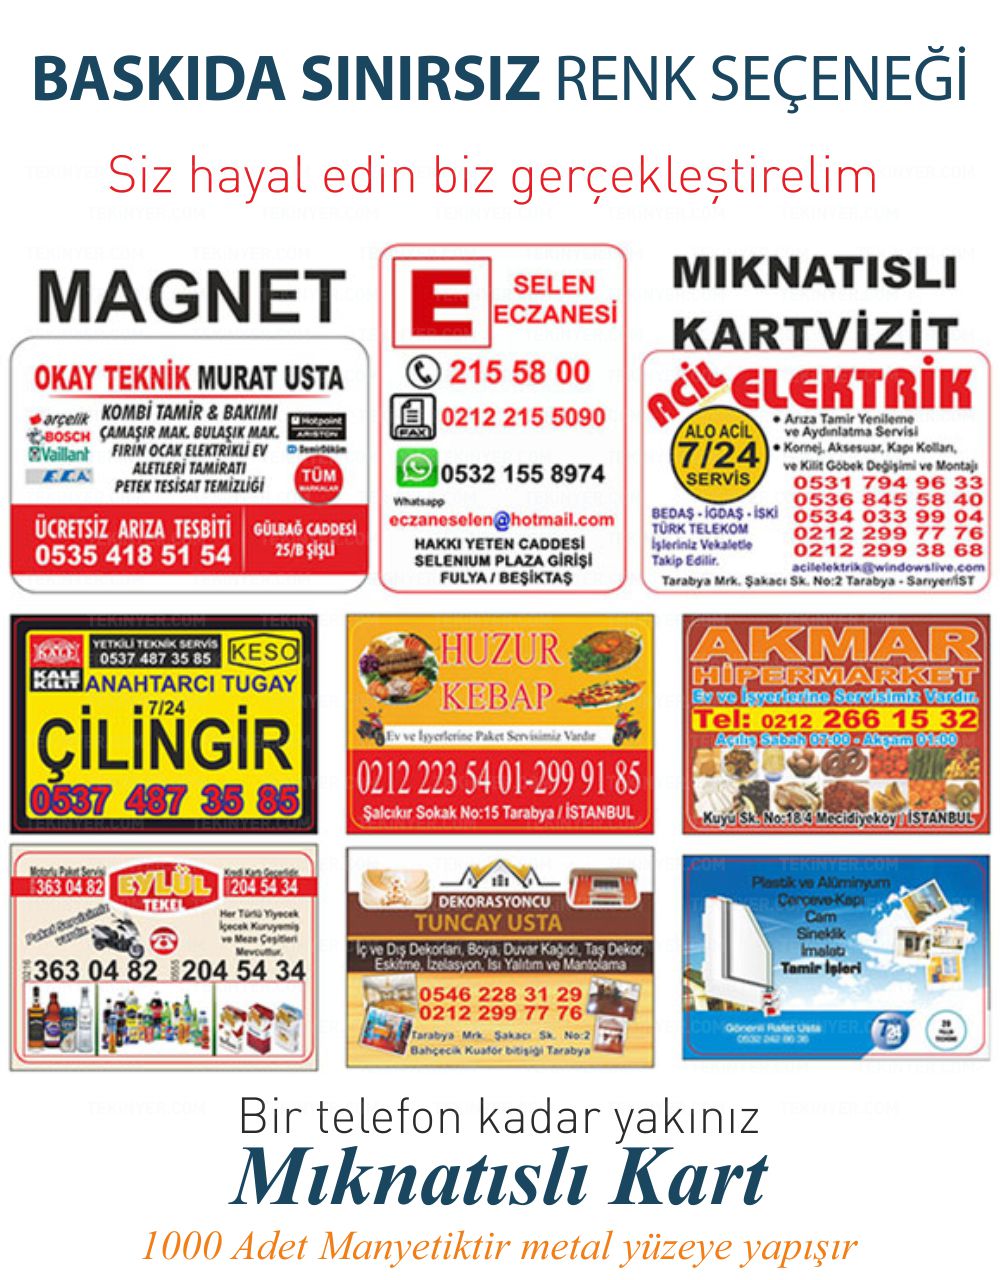 İstanbul Magnet Sınırsız Renk Baskı Seçeneği